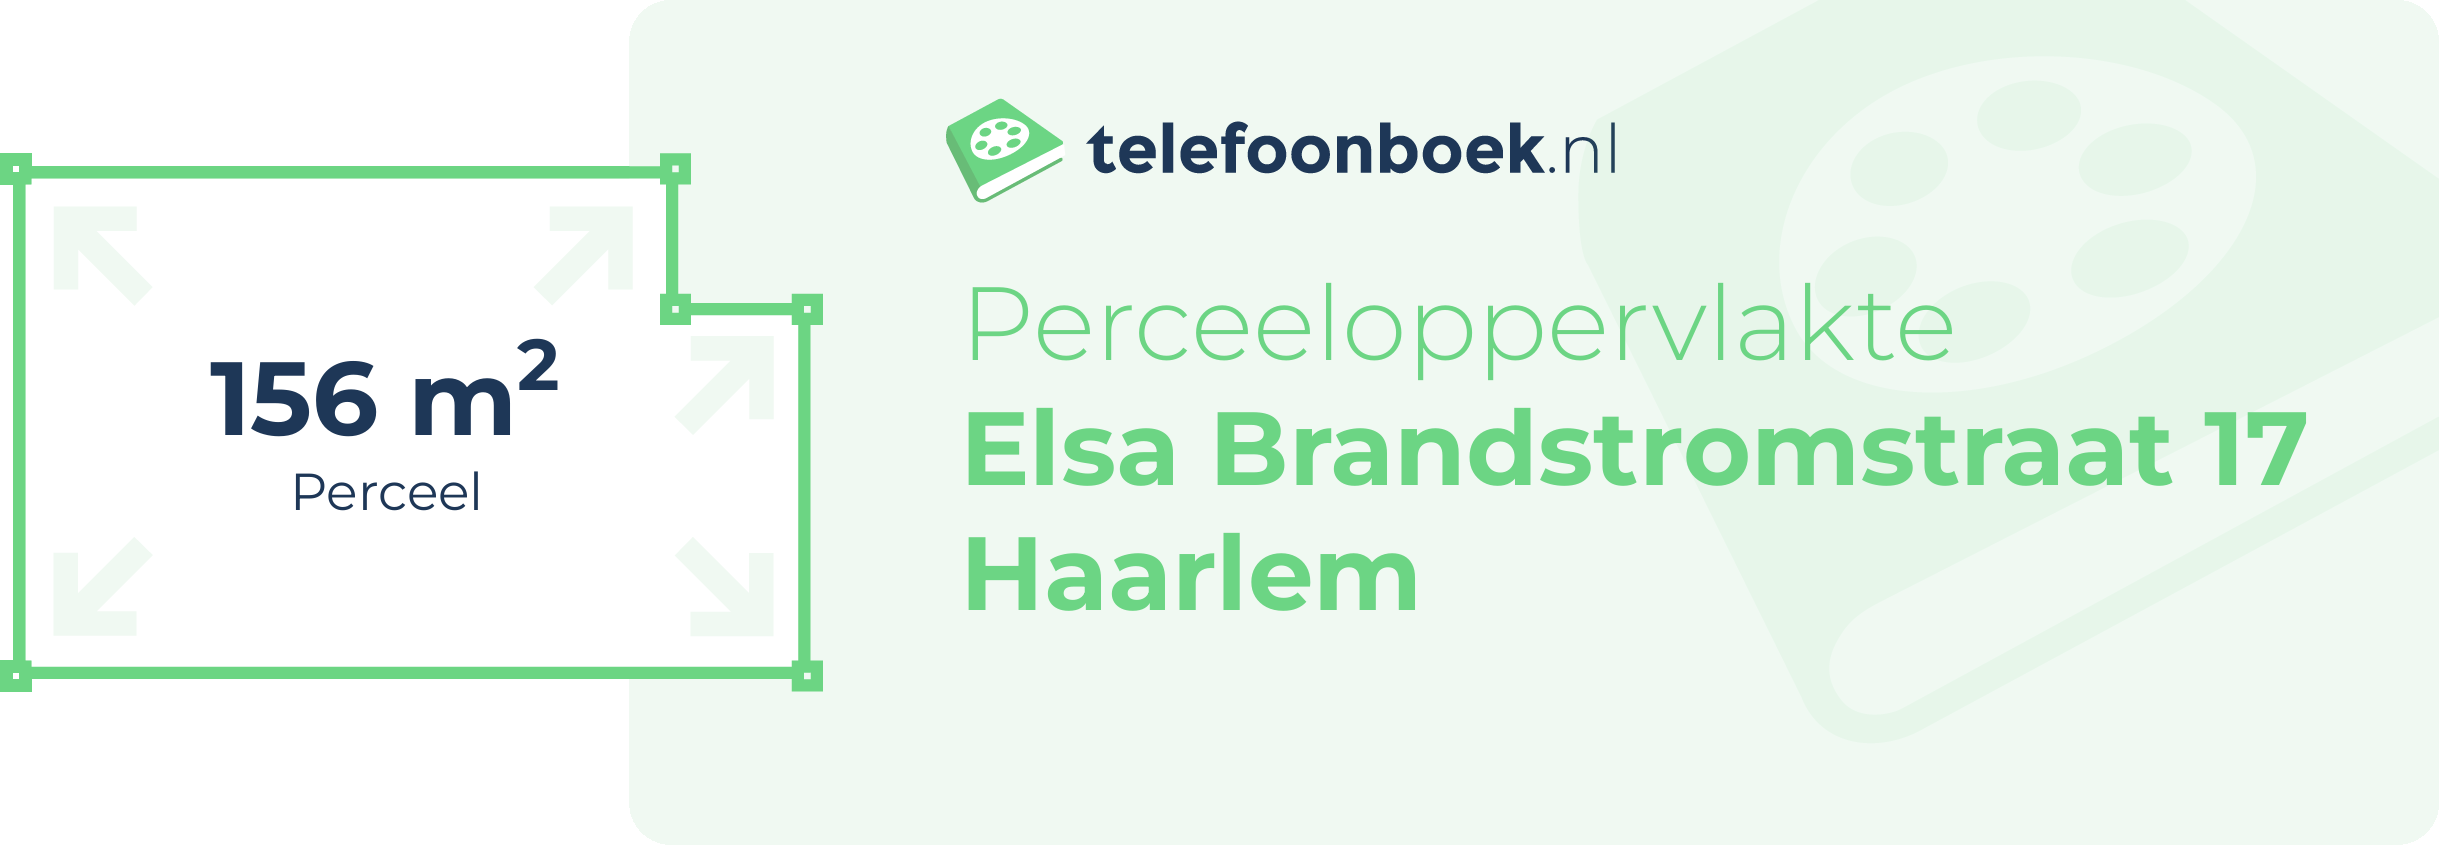 Perceeloppervlakte Elsa Brandstromstraat 17 Haarlem